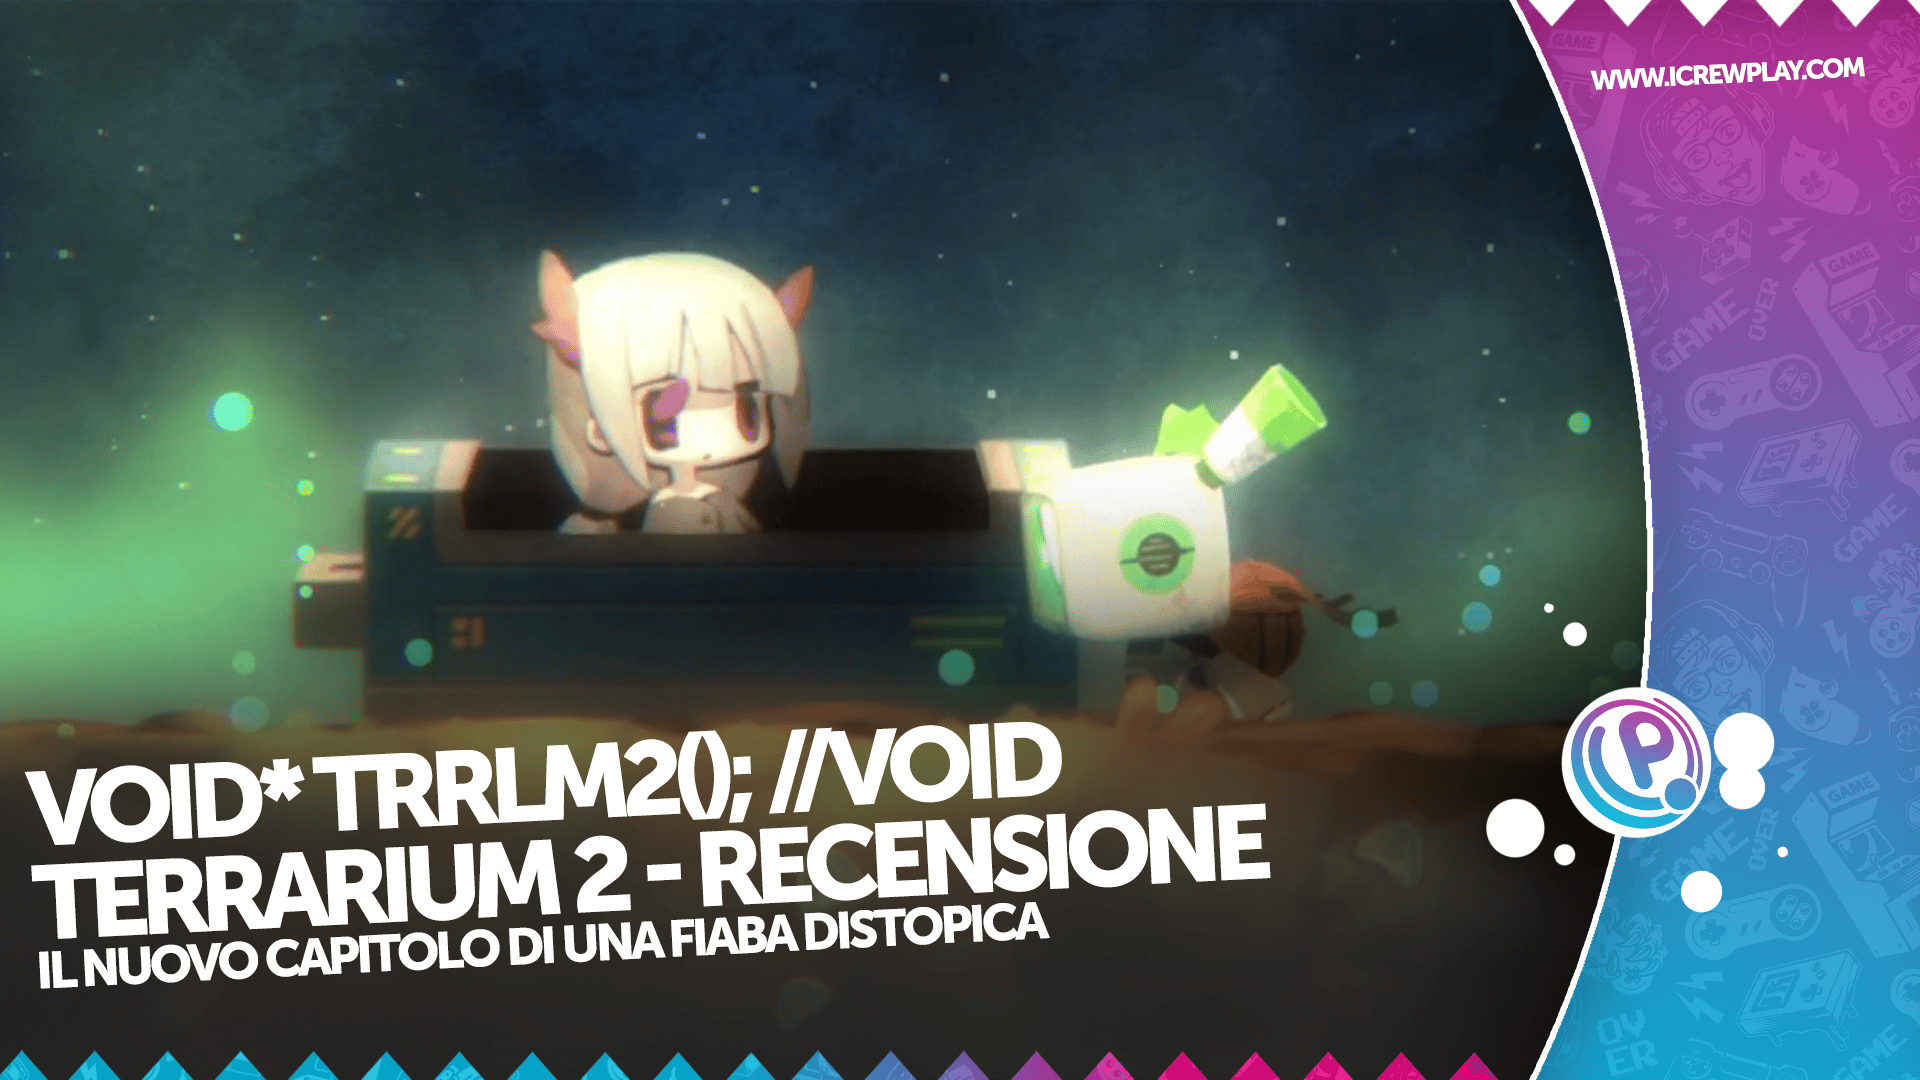 void* tRrLM2(); //Void Terrarium 2 recensione